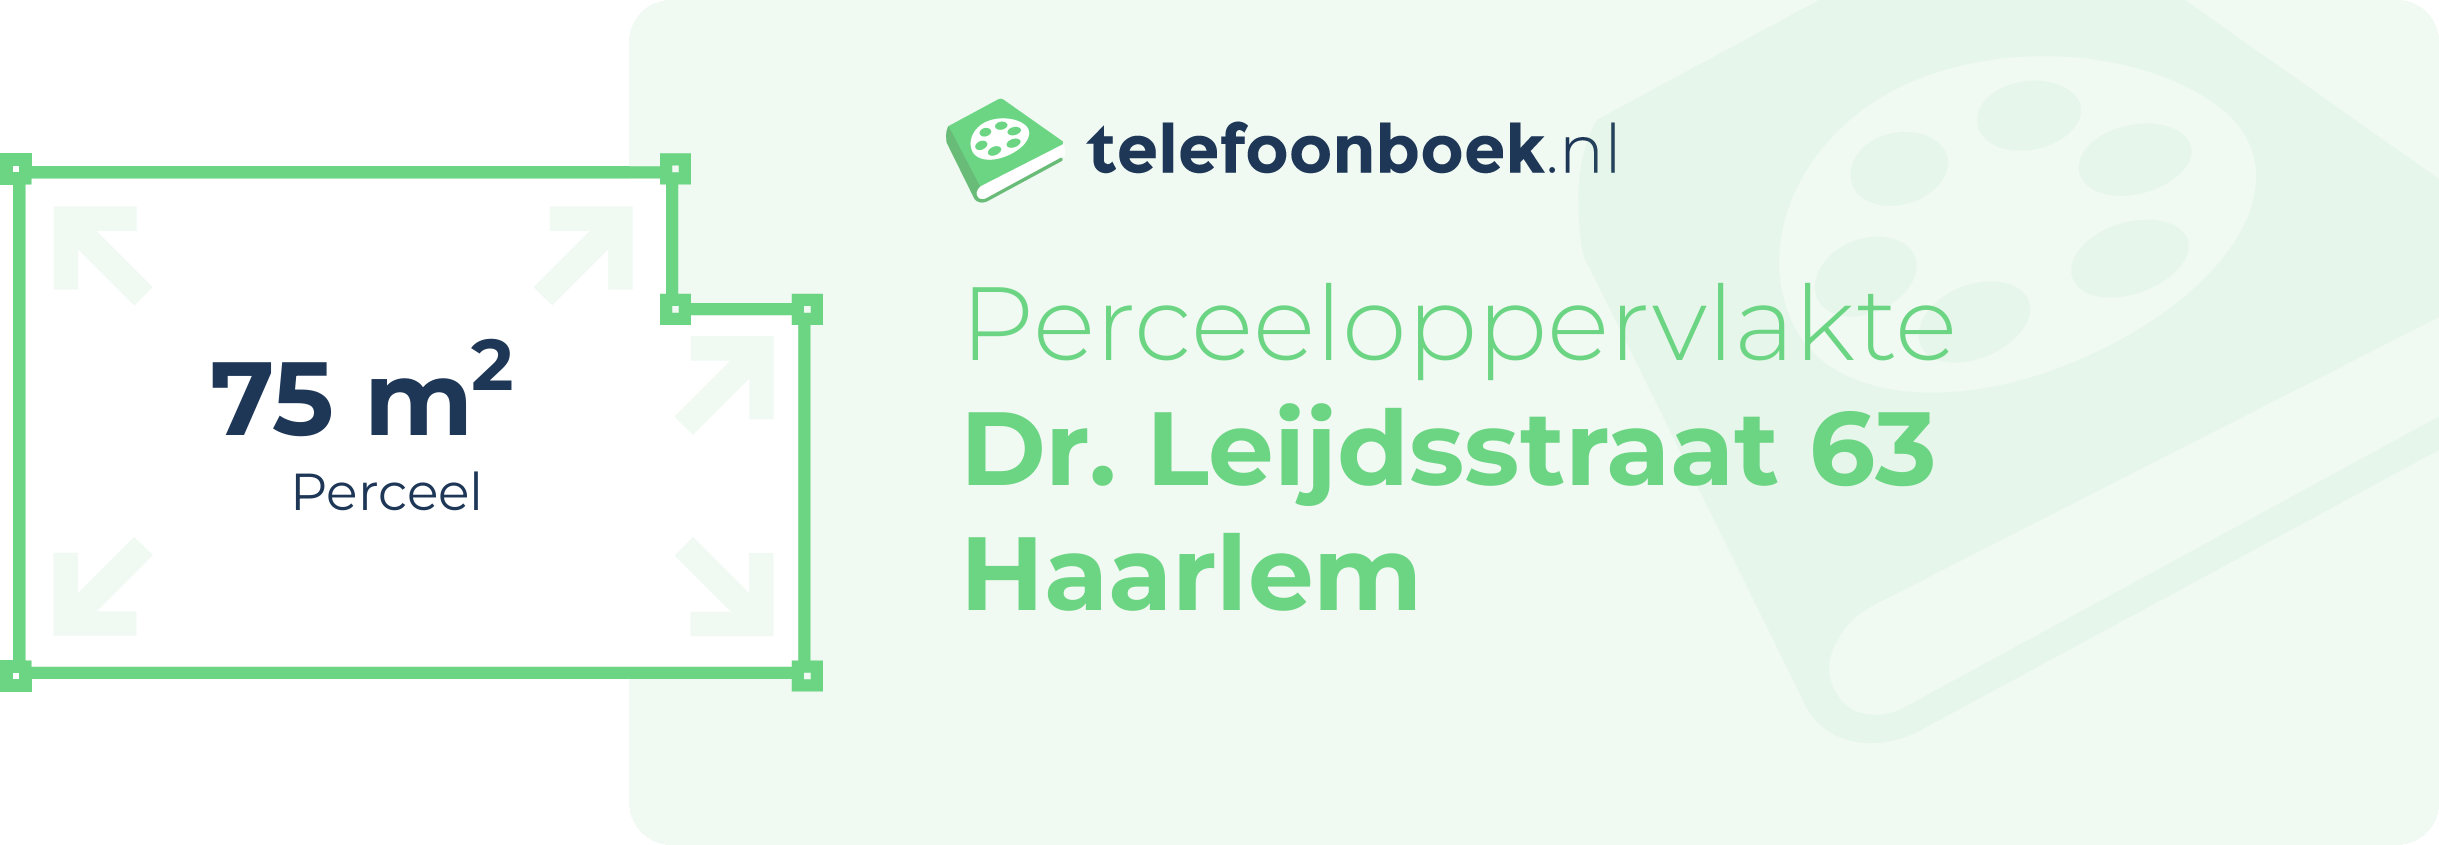 Perceeloppervlakte Dr. Leijdsstraat 63 Haarlem